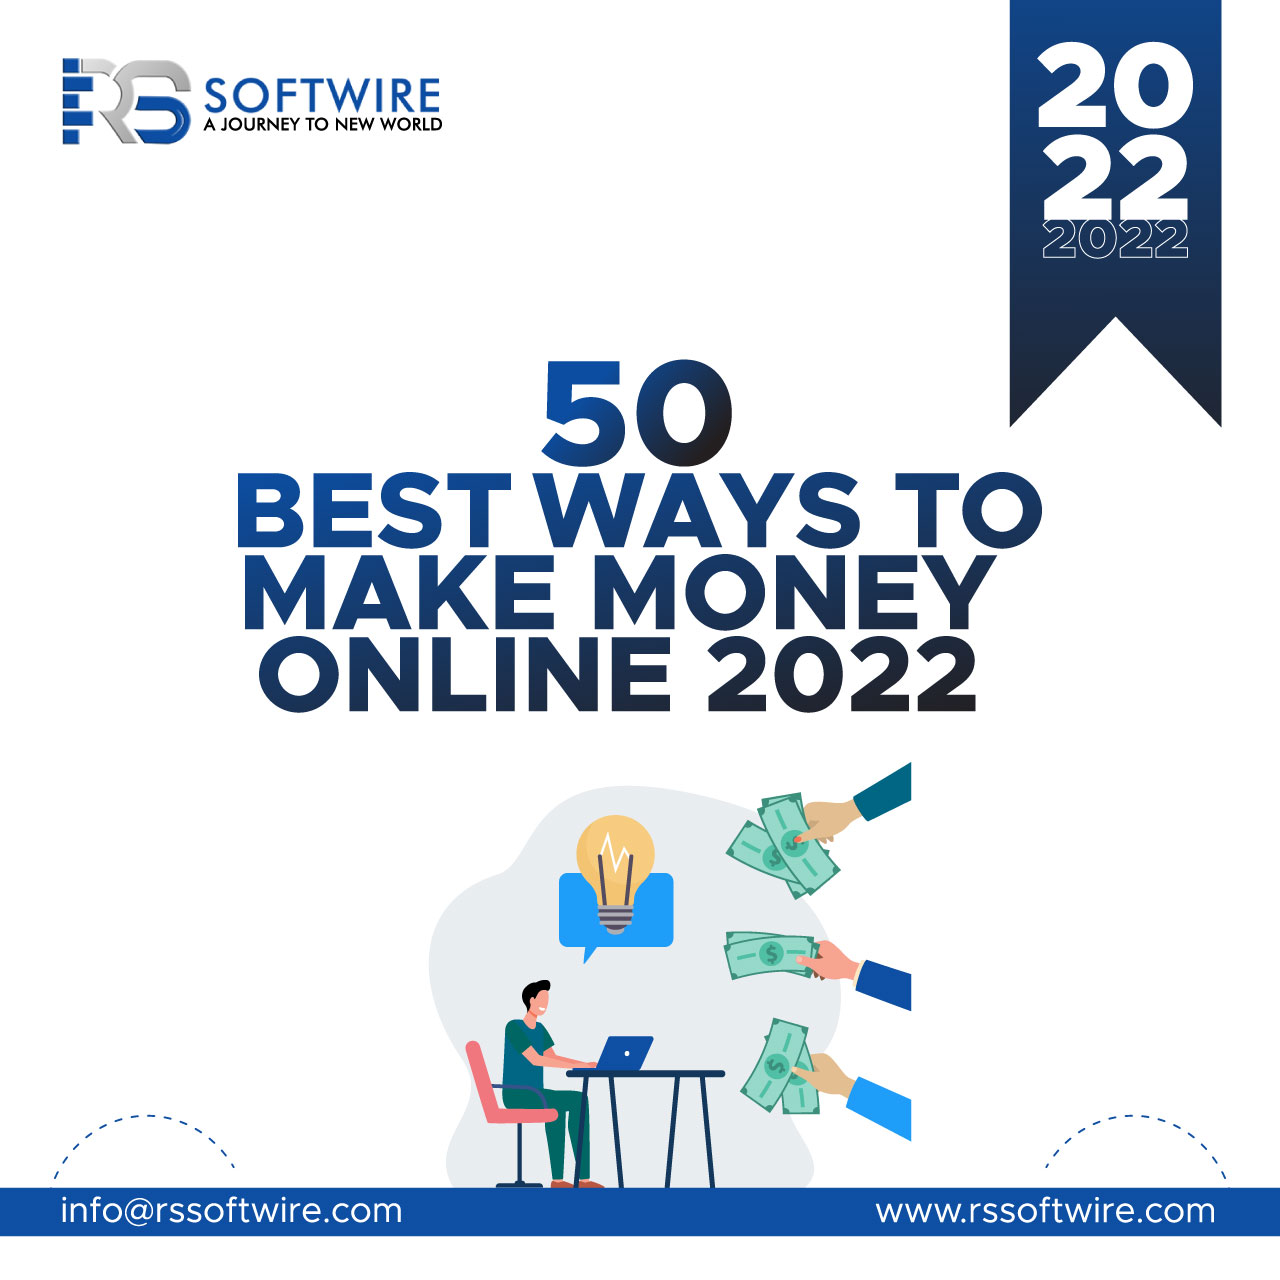 50 Best Ways to Make Money Online 2022